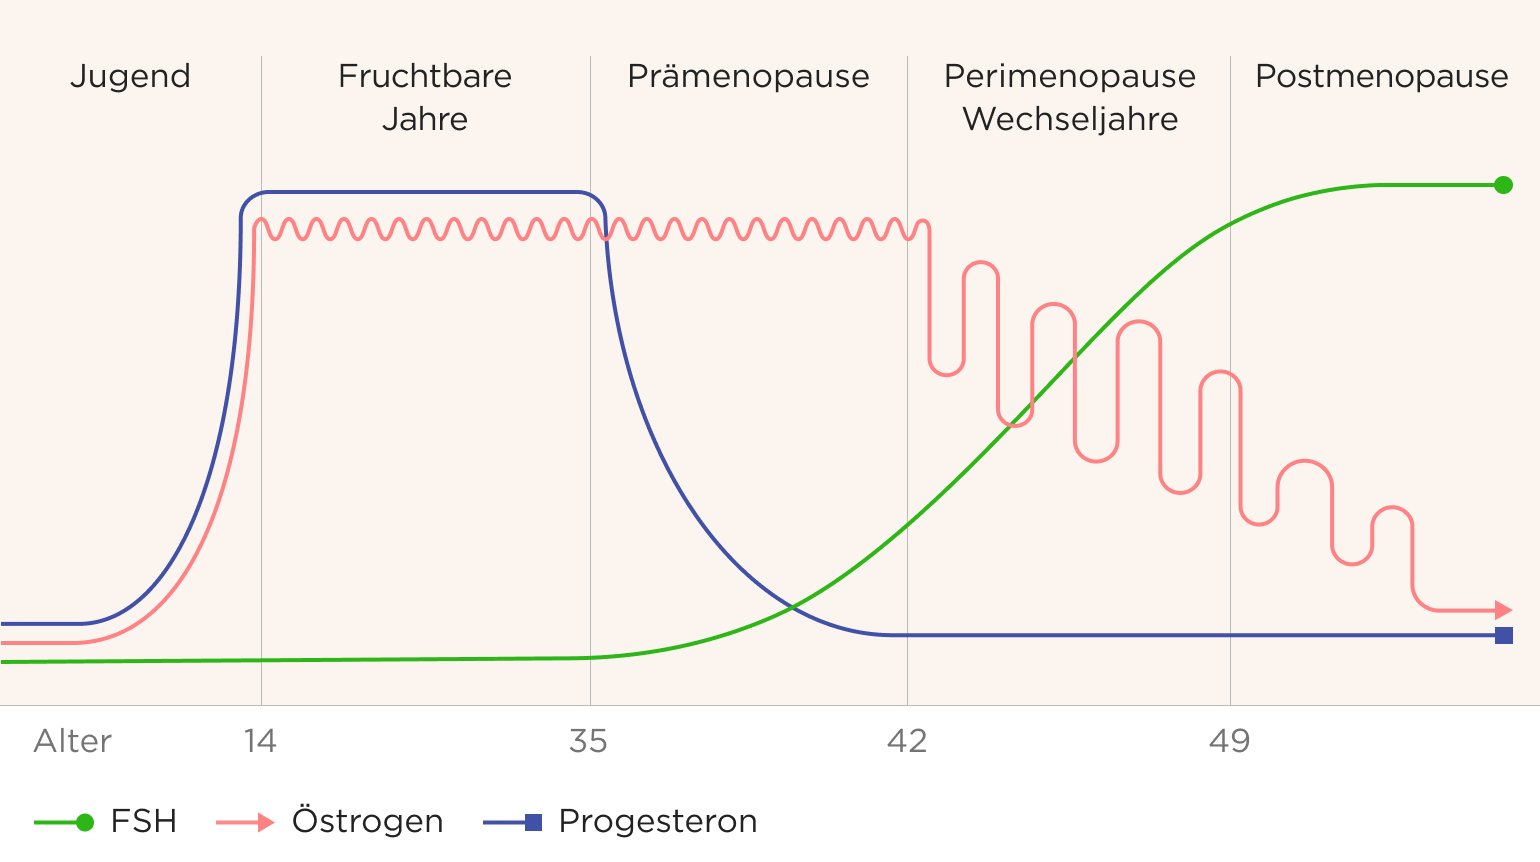 Grafische Darstellung der Hormonspiegel von Östrogen, Progesteron und FSH, die in den fruchtbaren Jahren von 14 bis 35 Jahren, der Prämenopause bis 42, der Perimenopause (Wechseljahre) bis 49 und der Postmenopause durchschnittlich auftreten.